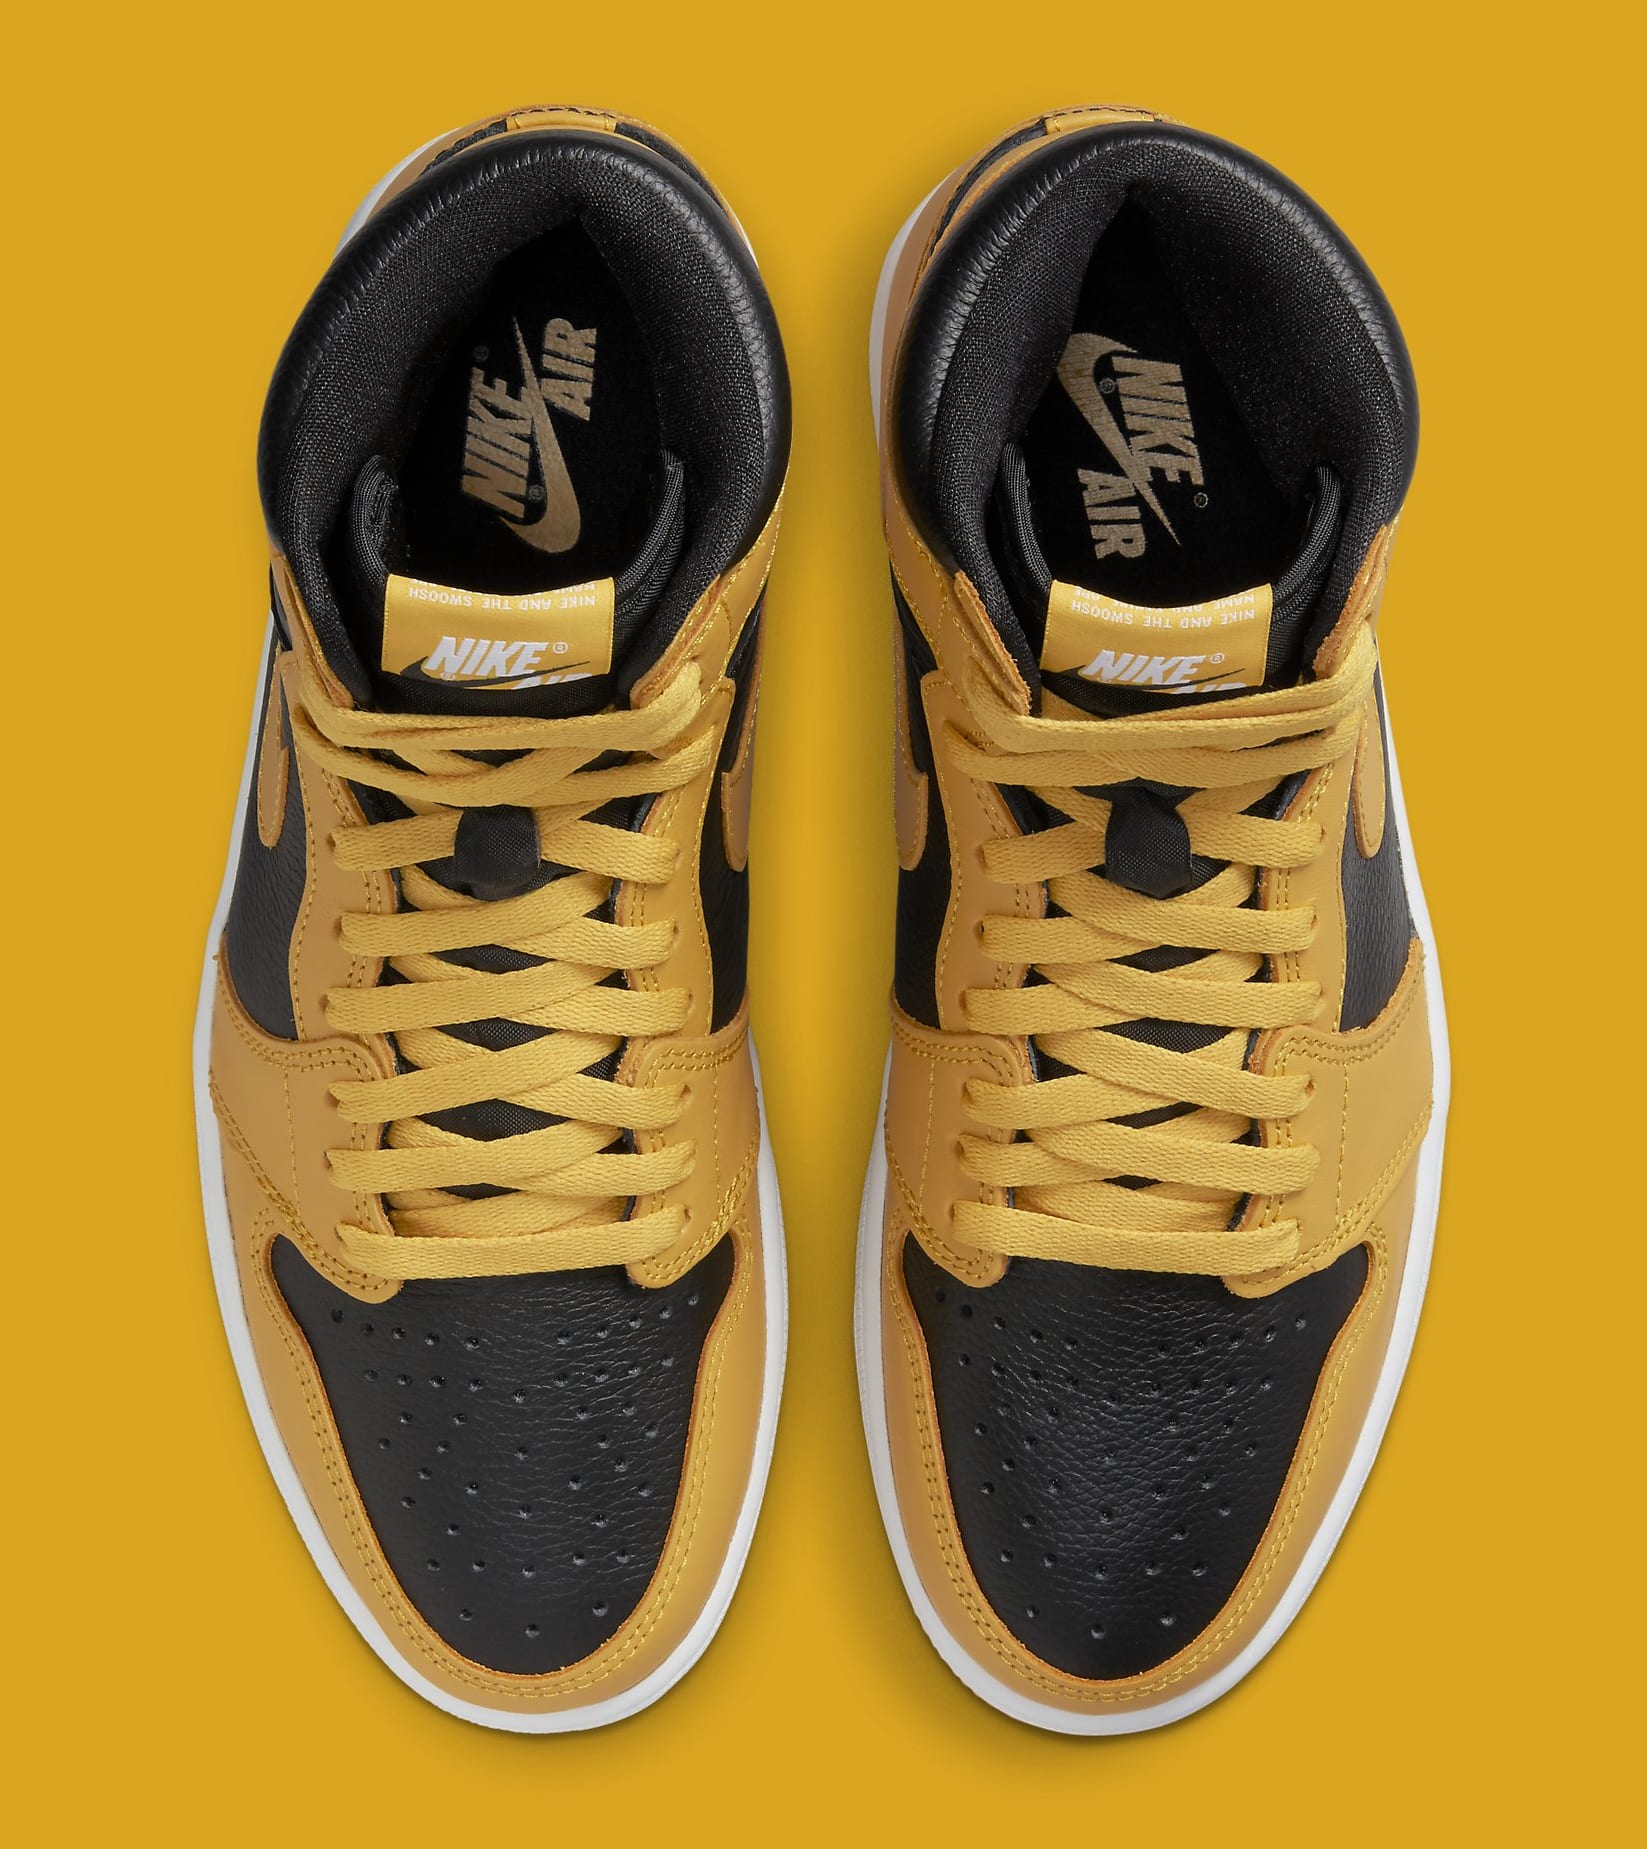 Pollen' Air Jordan 1 Highs Get an Official Release Date | Complex